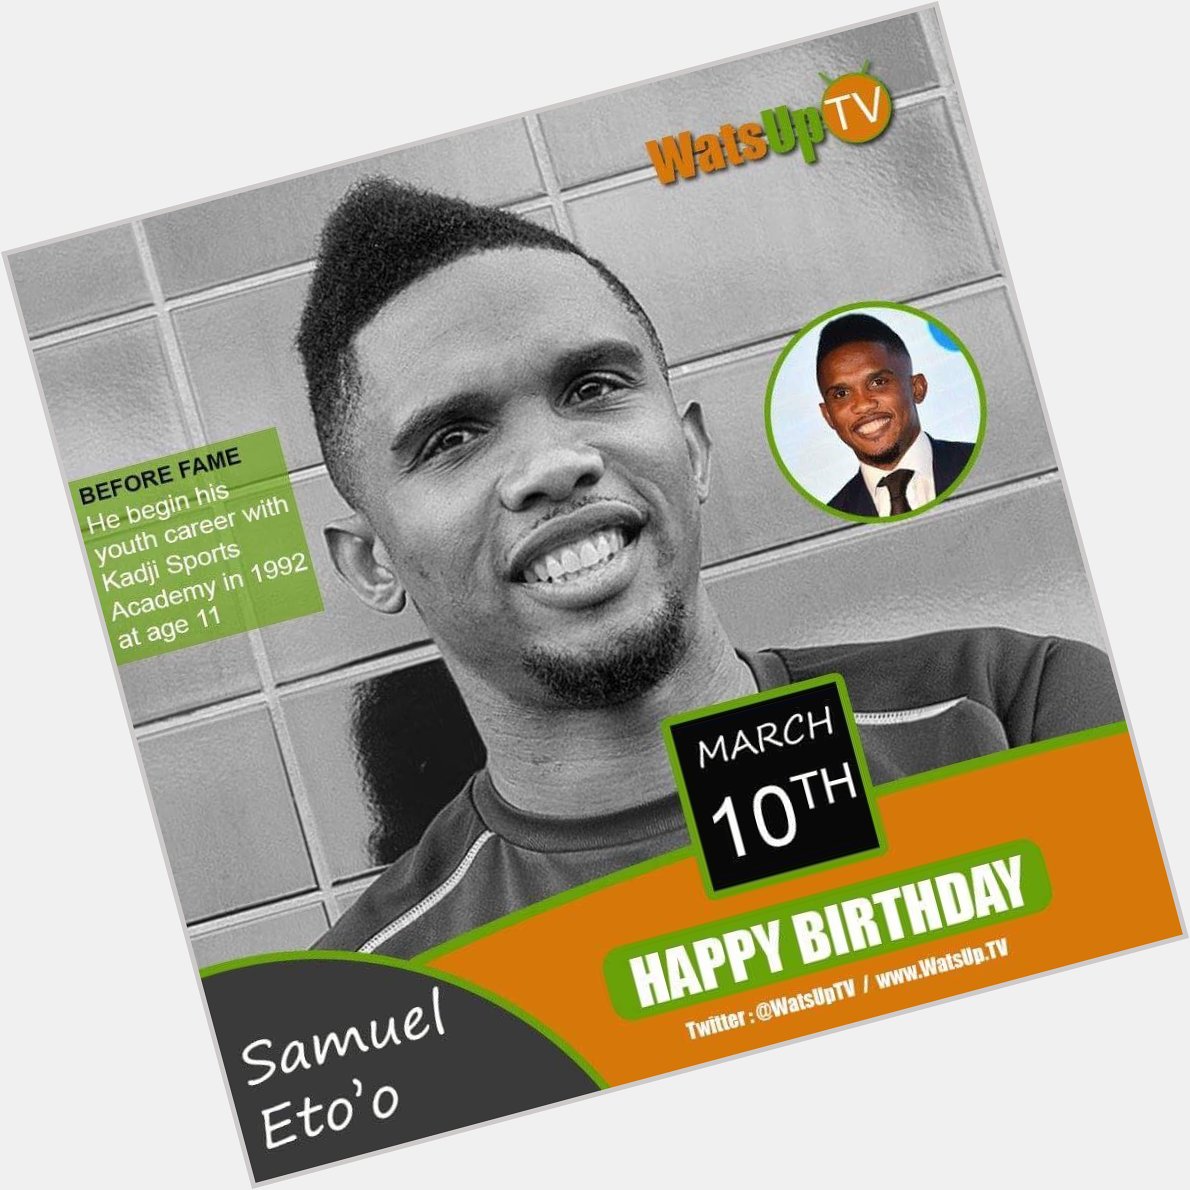 Happy birthday Samuel Eto\o 